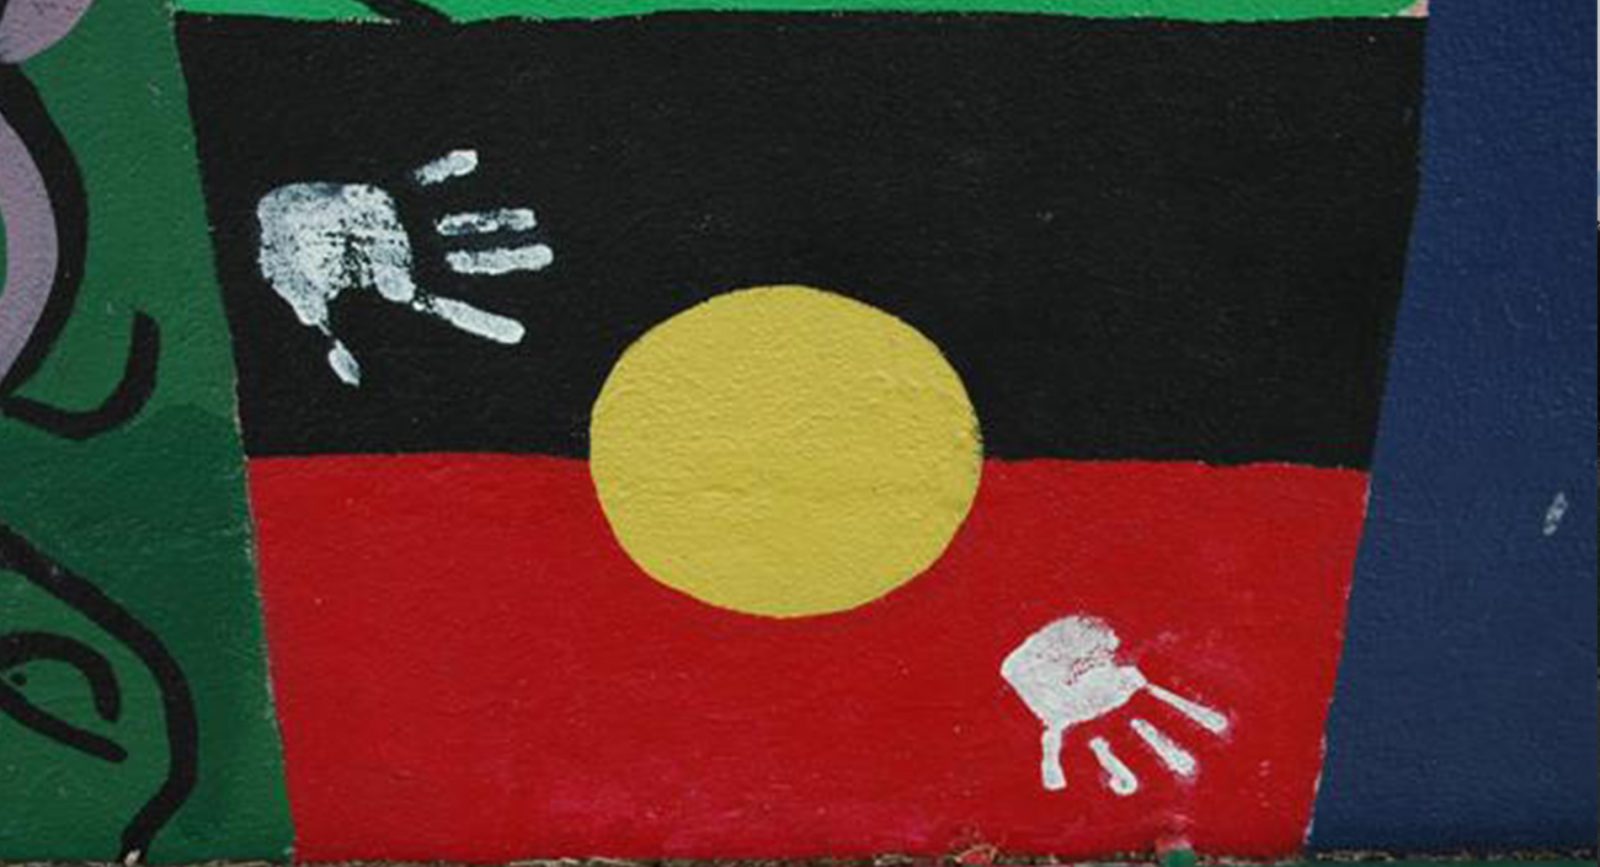 Street art of an Aboriginal flag